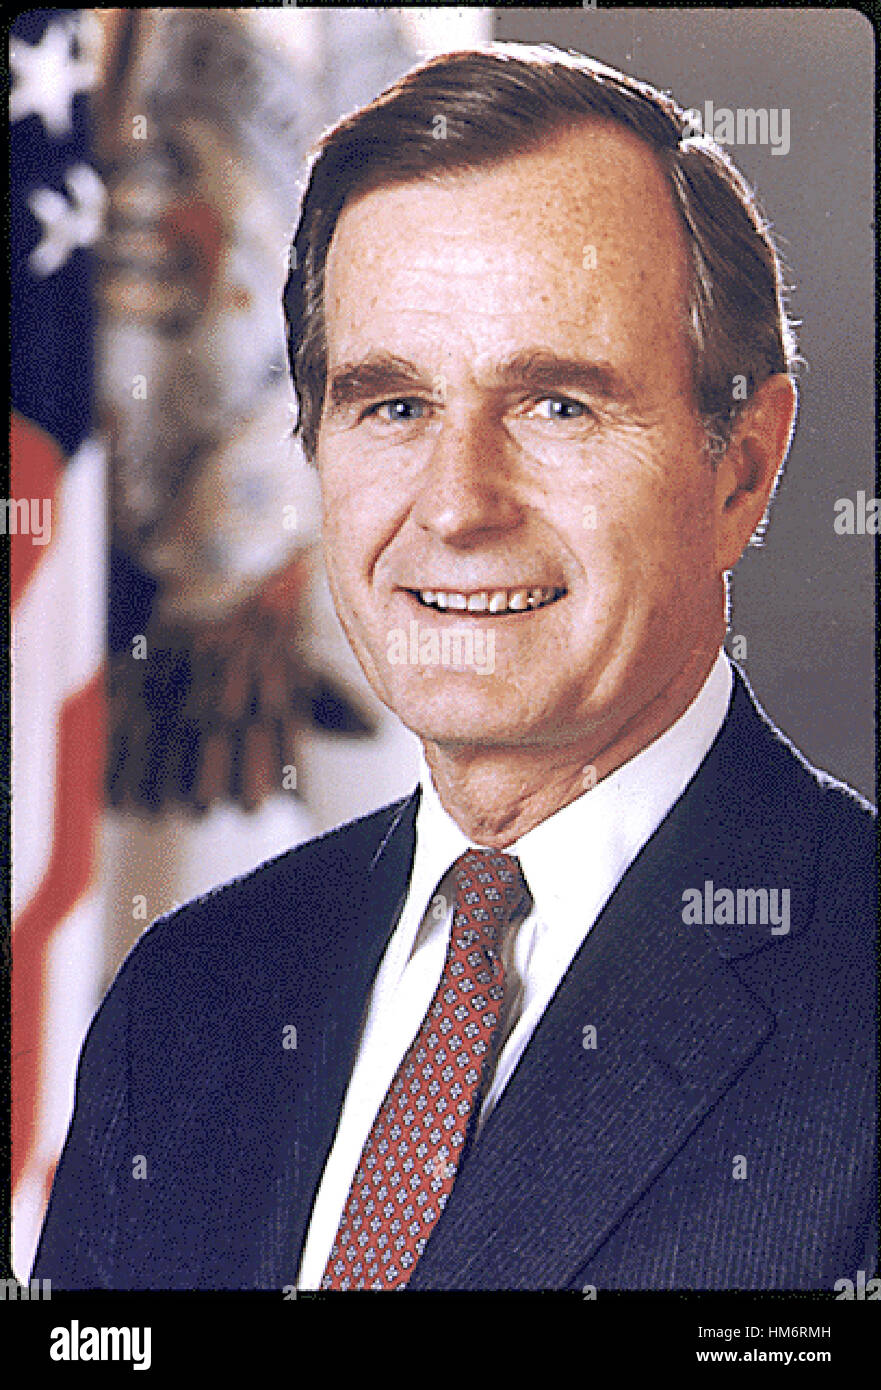 Washington, DC - retrato oficial del 41º Presidente de los Estados Unidos George H.W. Bush adoptadas en 1989..Crédito: Casa Blanca a través del CNP /MediaPunch Foto de stock